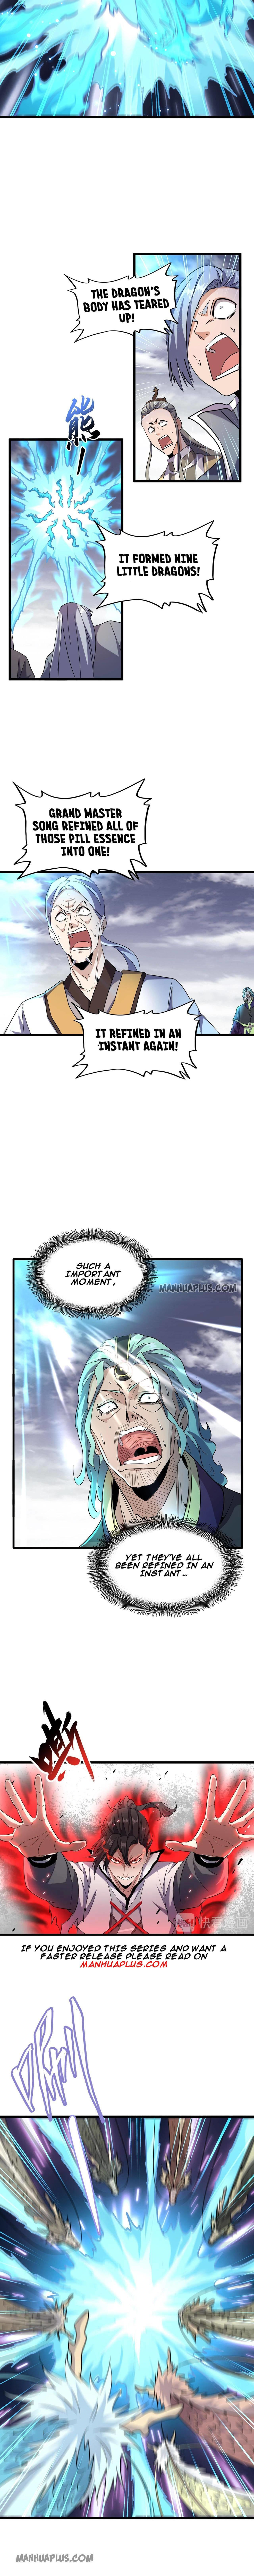 Magic Emperor Chapter 184 page 3 - Mangakakalot